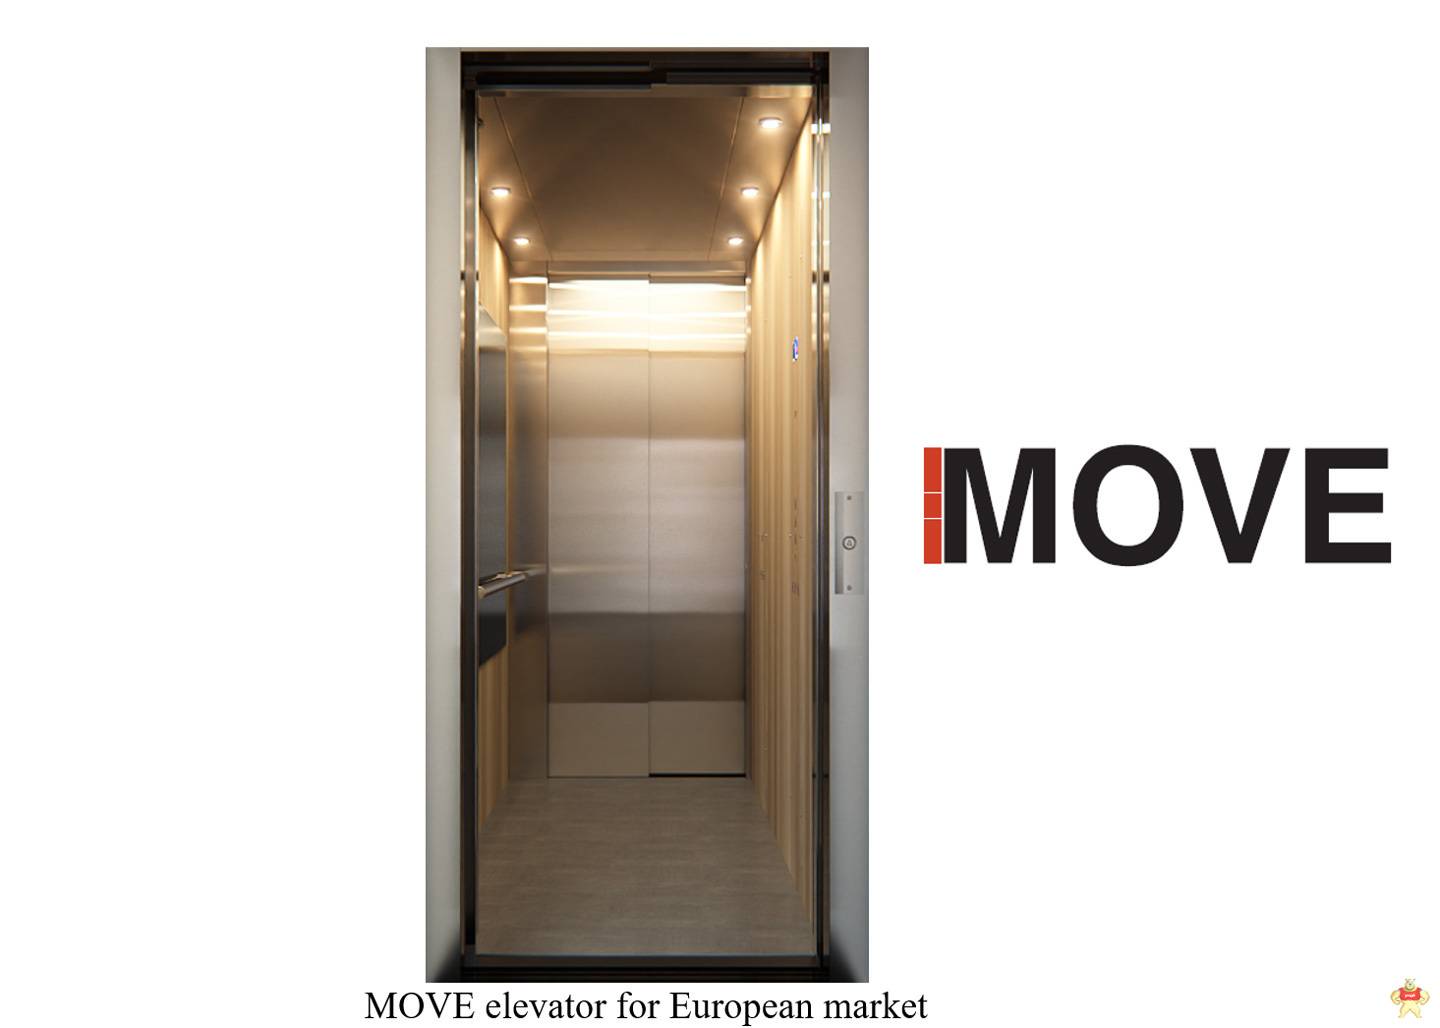 三菱电机在欧洲市场推出移动电梯:专为中低层办公楼和